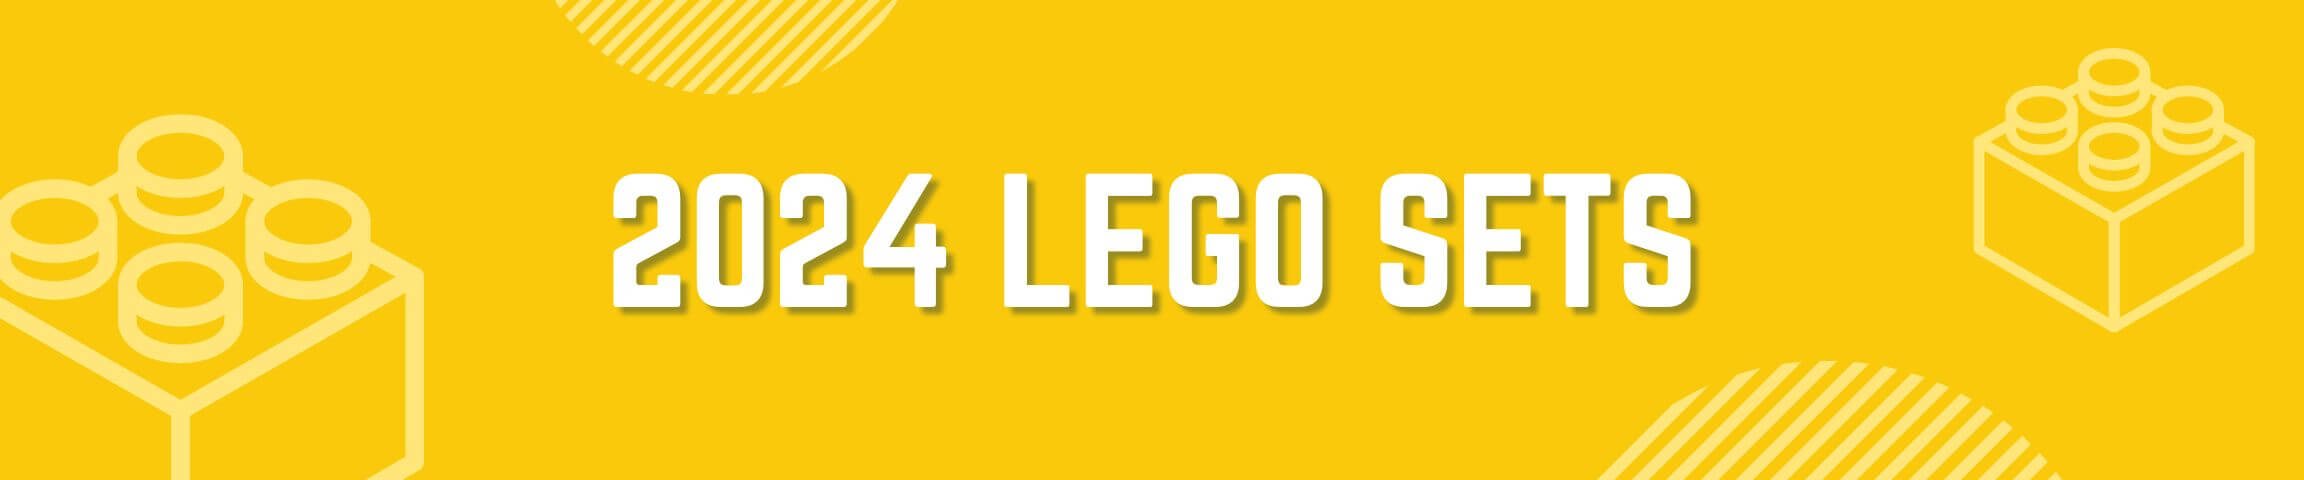 2024 LEGO Sets banner